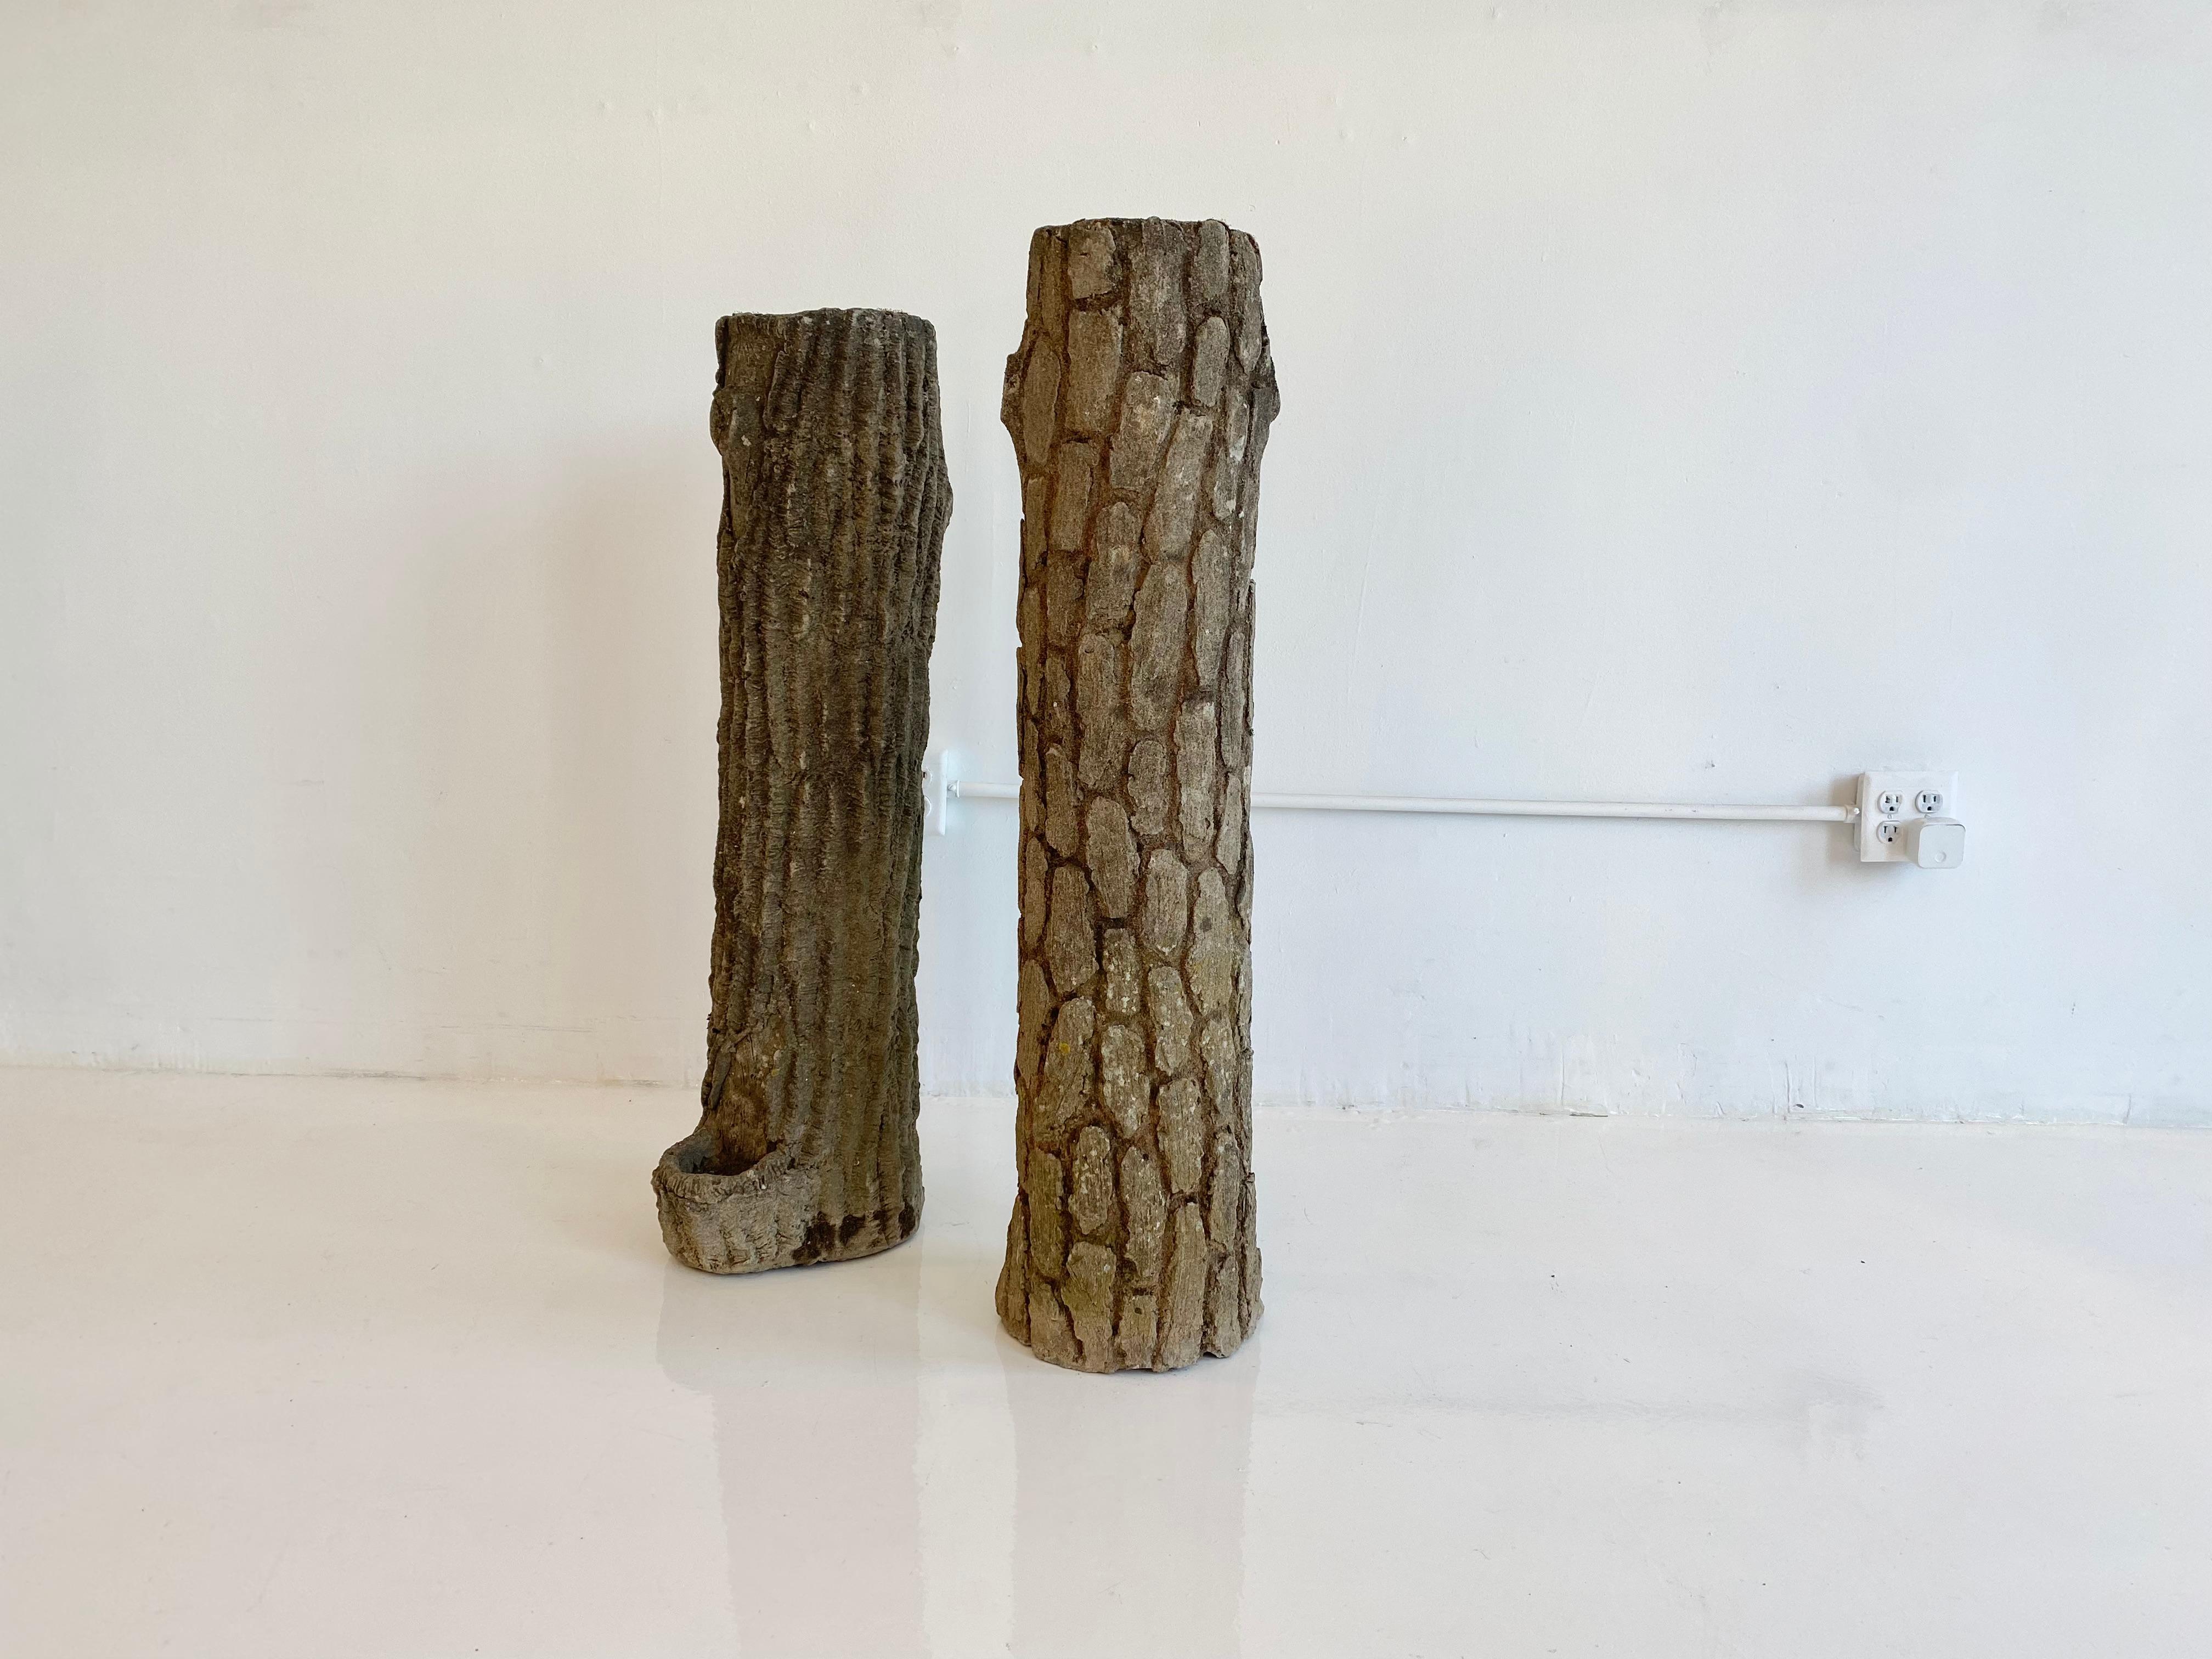 Ungewöhnliches Paar Faux Bois Pflanzgefäße aus Beton in Form von Baumstümpfen. Großer Maßstab und große Präsenz. Die Patina der einzelnen Pflanzgefäße ist leicht unterschiedlich. Toller Zustand. Der Preis gilt für ein Paar. 


Maße: Taller